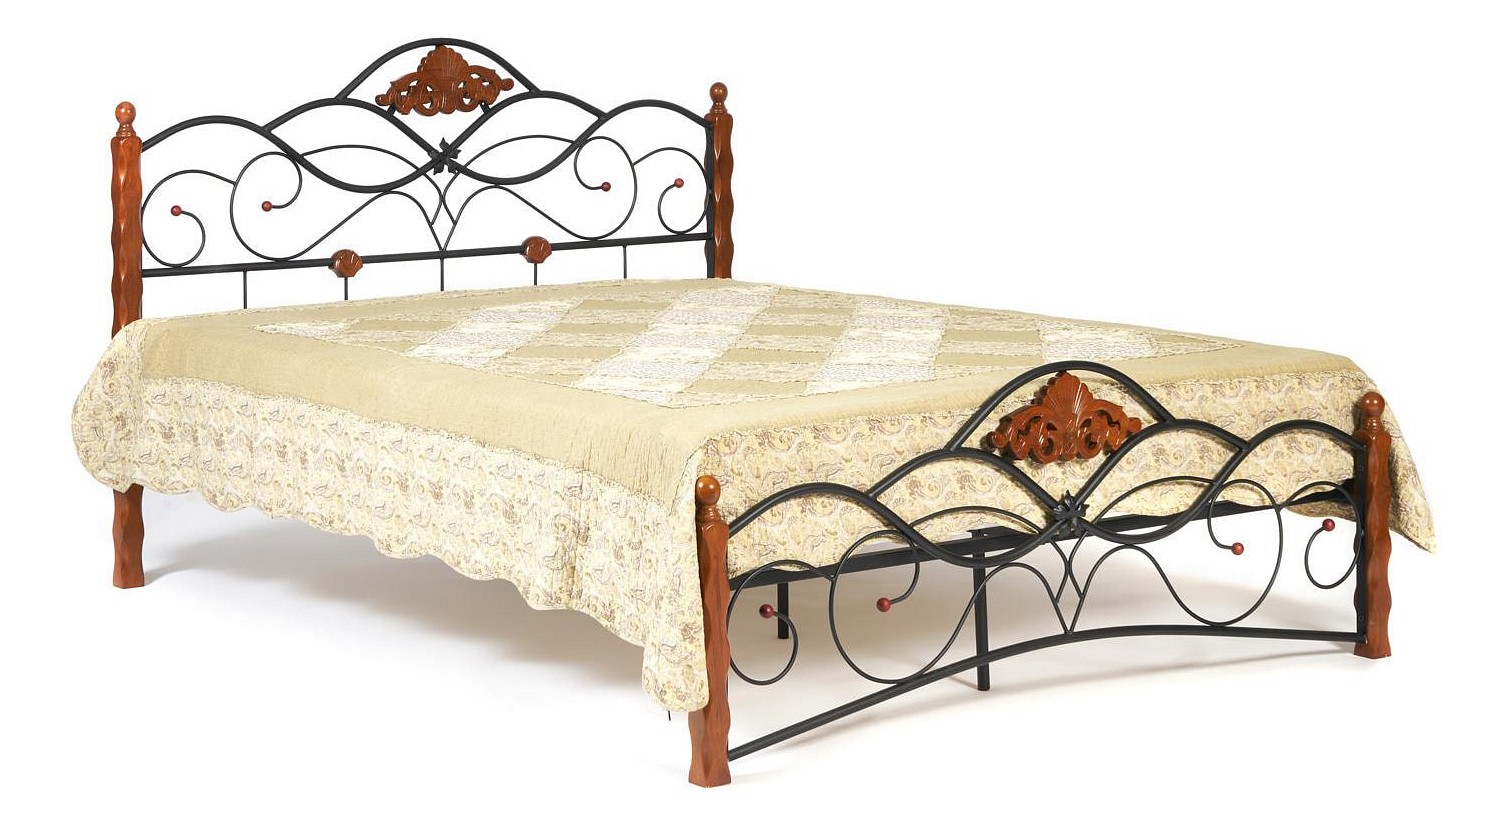 Кровать кованая канцона canzona основание 120 см x 200 см